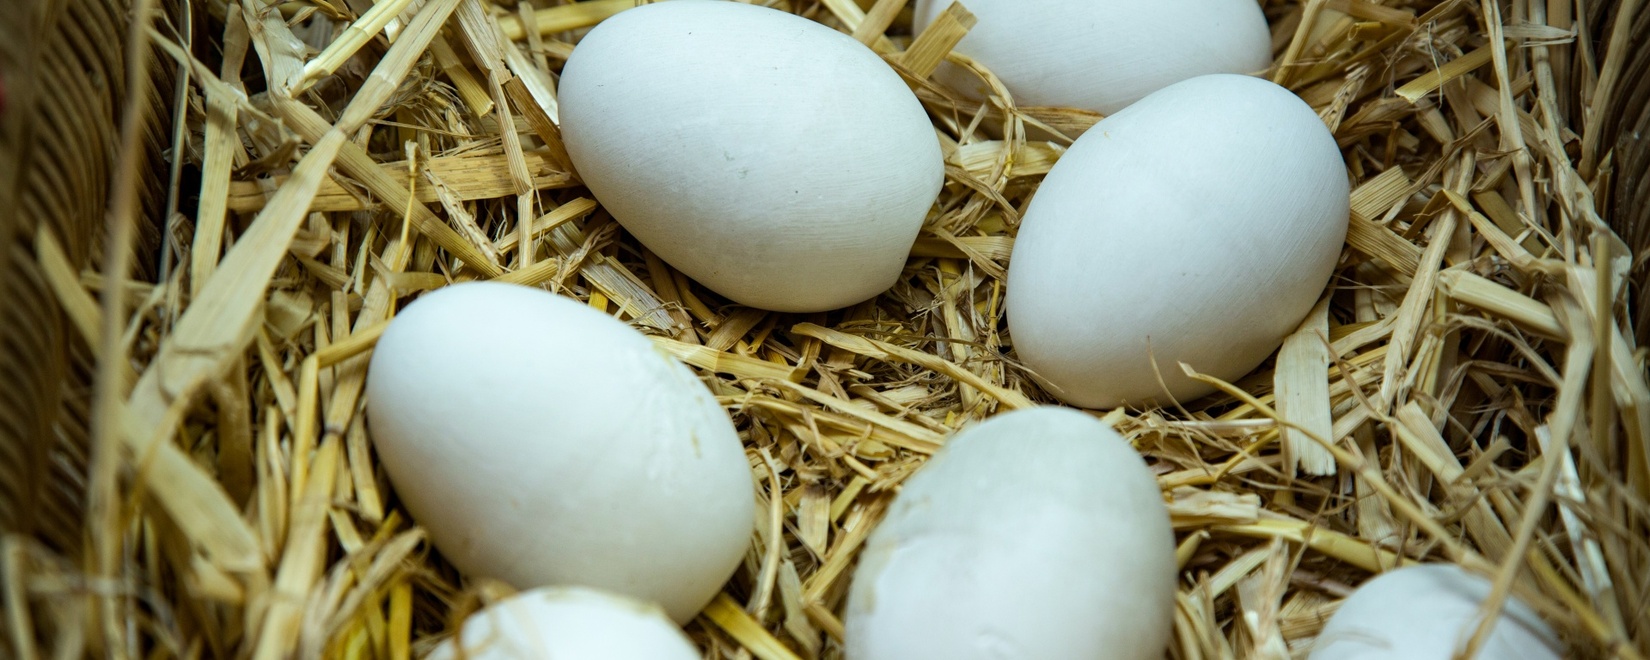 Цены на яйца в России начнут снижаться